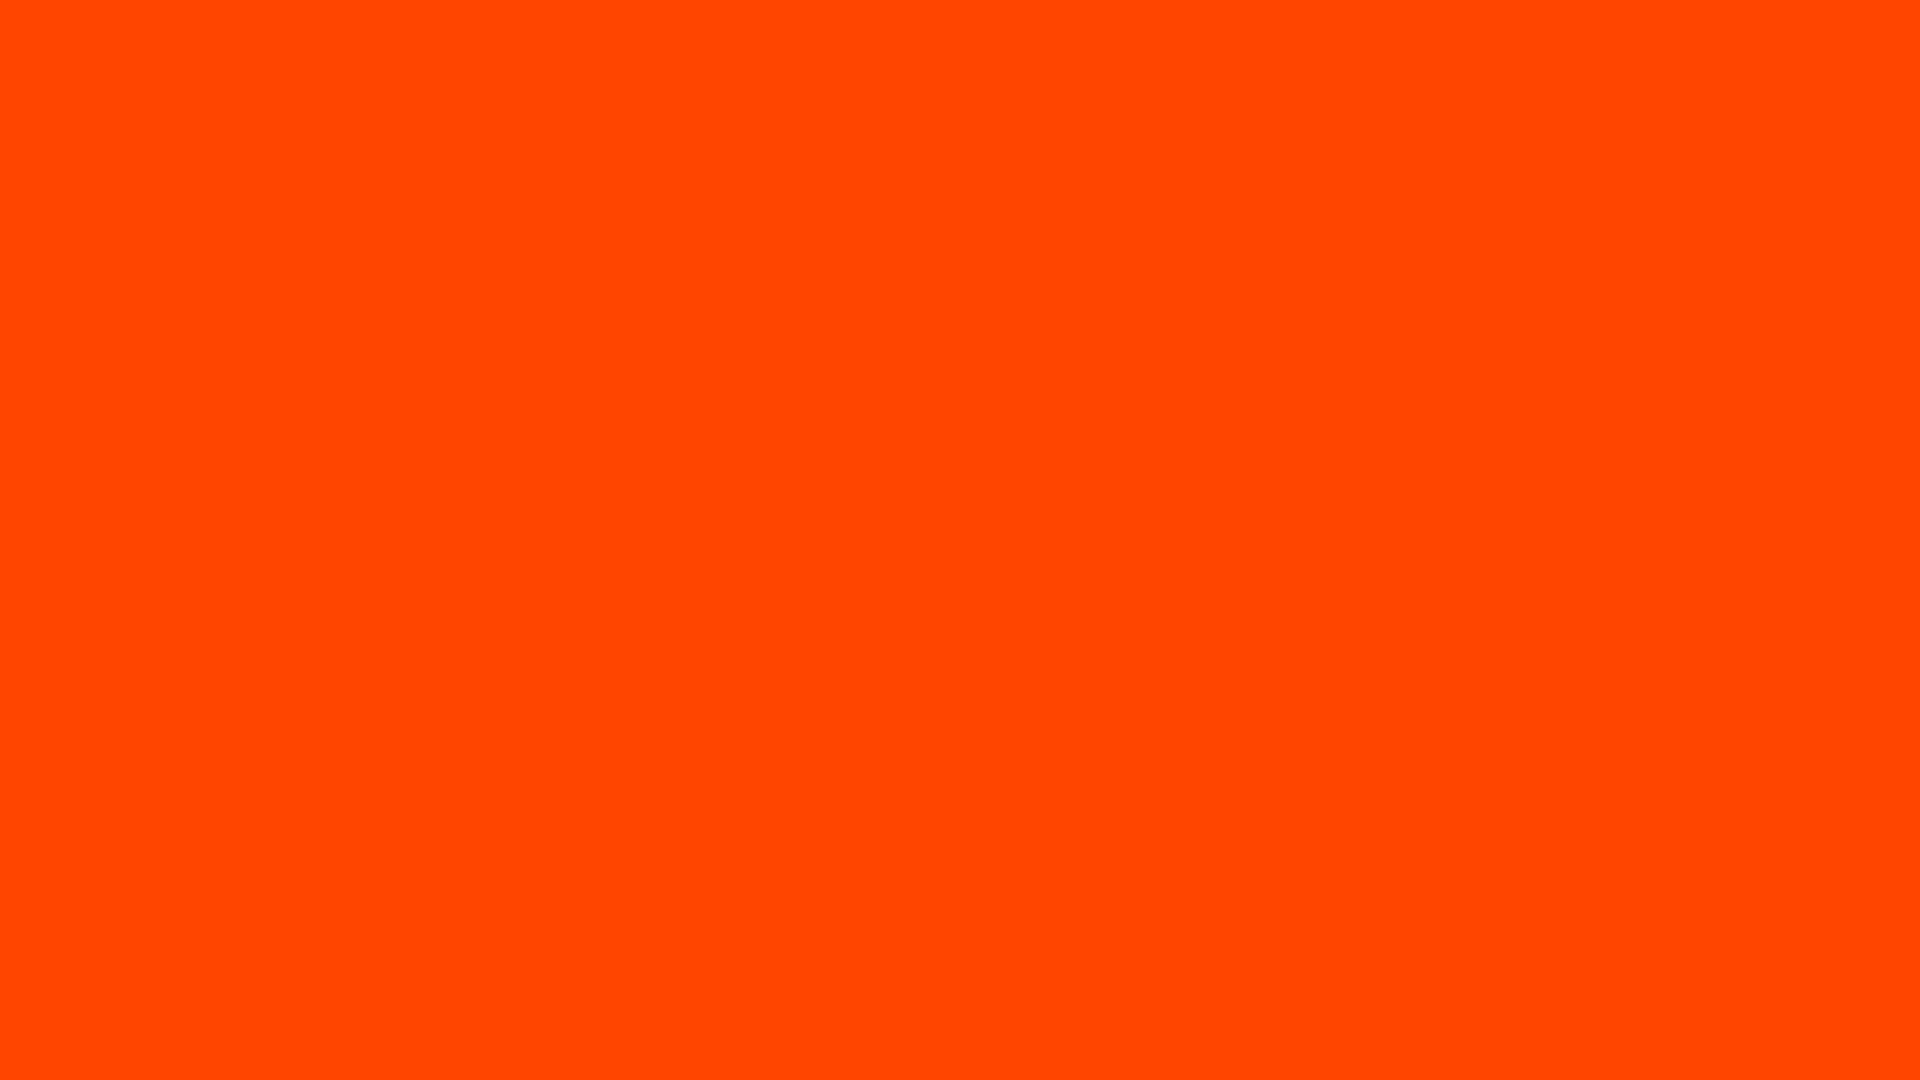 Orange-red: Sự kết hợp của màu cam và đỏ, orange-red sẽ đem lại cho bạn sự đậm chất và hấp dẫn, cũng như tạo nên một điểm nhấn sáng trong văn phòng hoặc nhà cửa của bạn. Hãy chiêm ngưỡng bức ảnh đầy cuốn hút này và khám phá cảm giác mê hoặc của màu sắc.